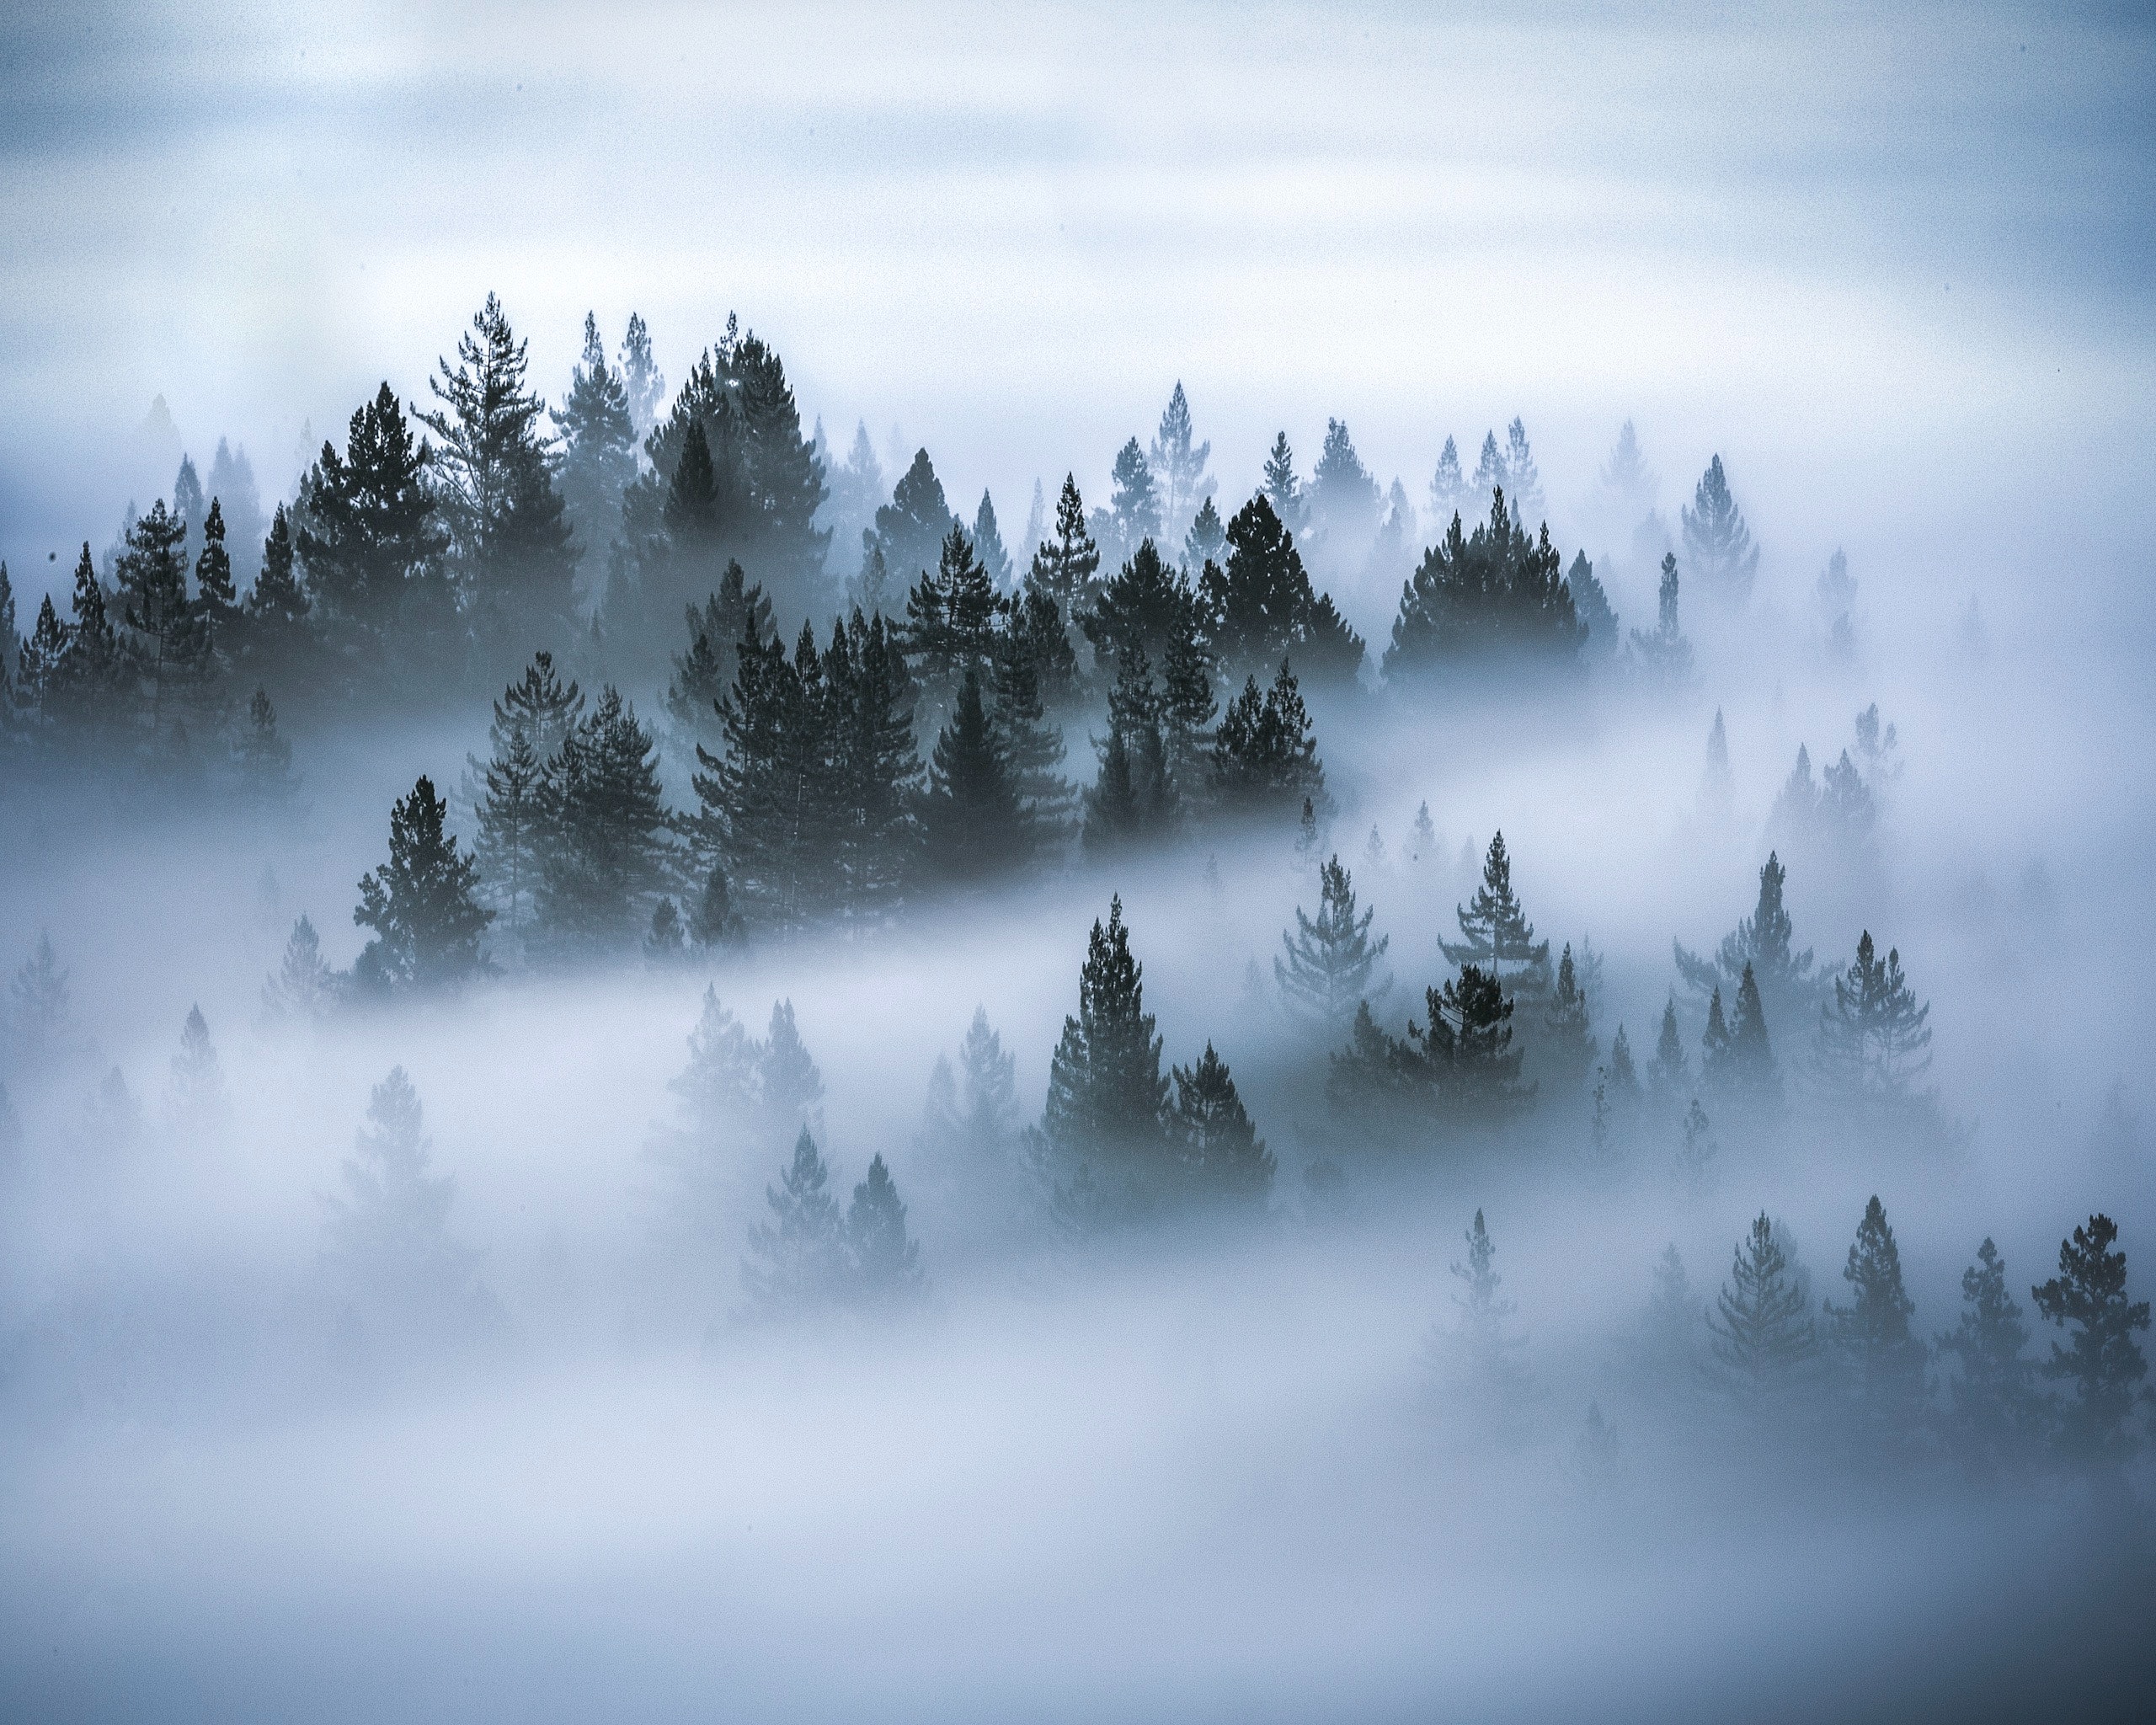 Misty pine trees